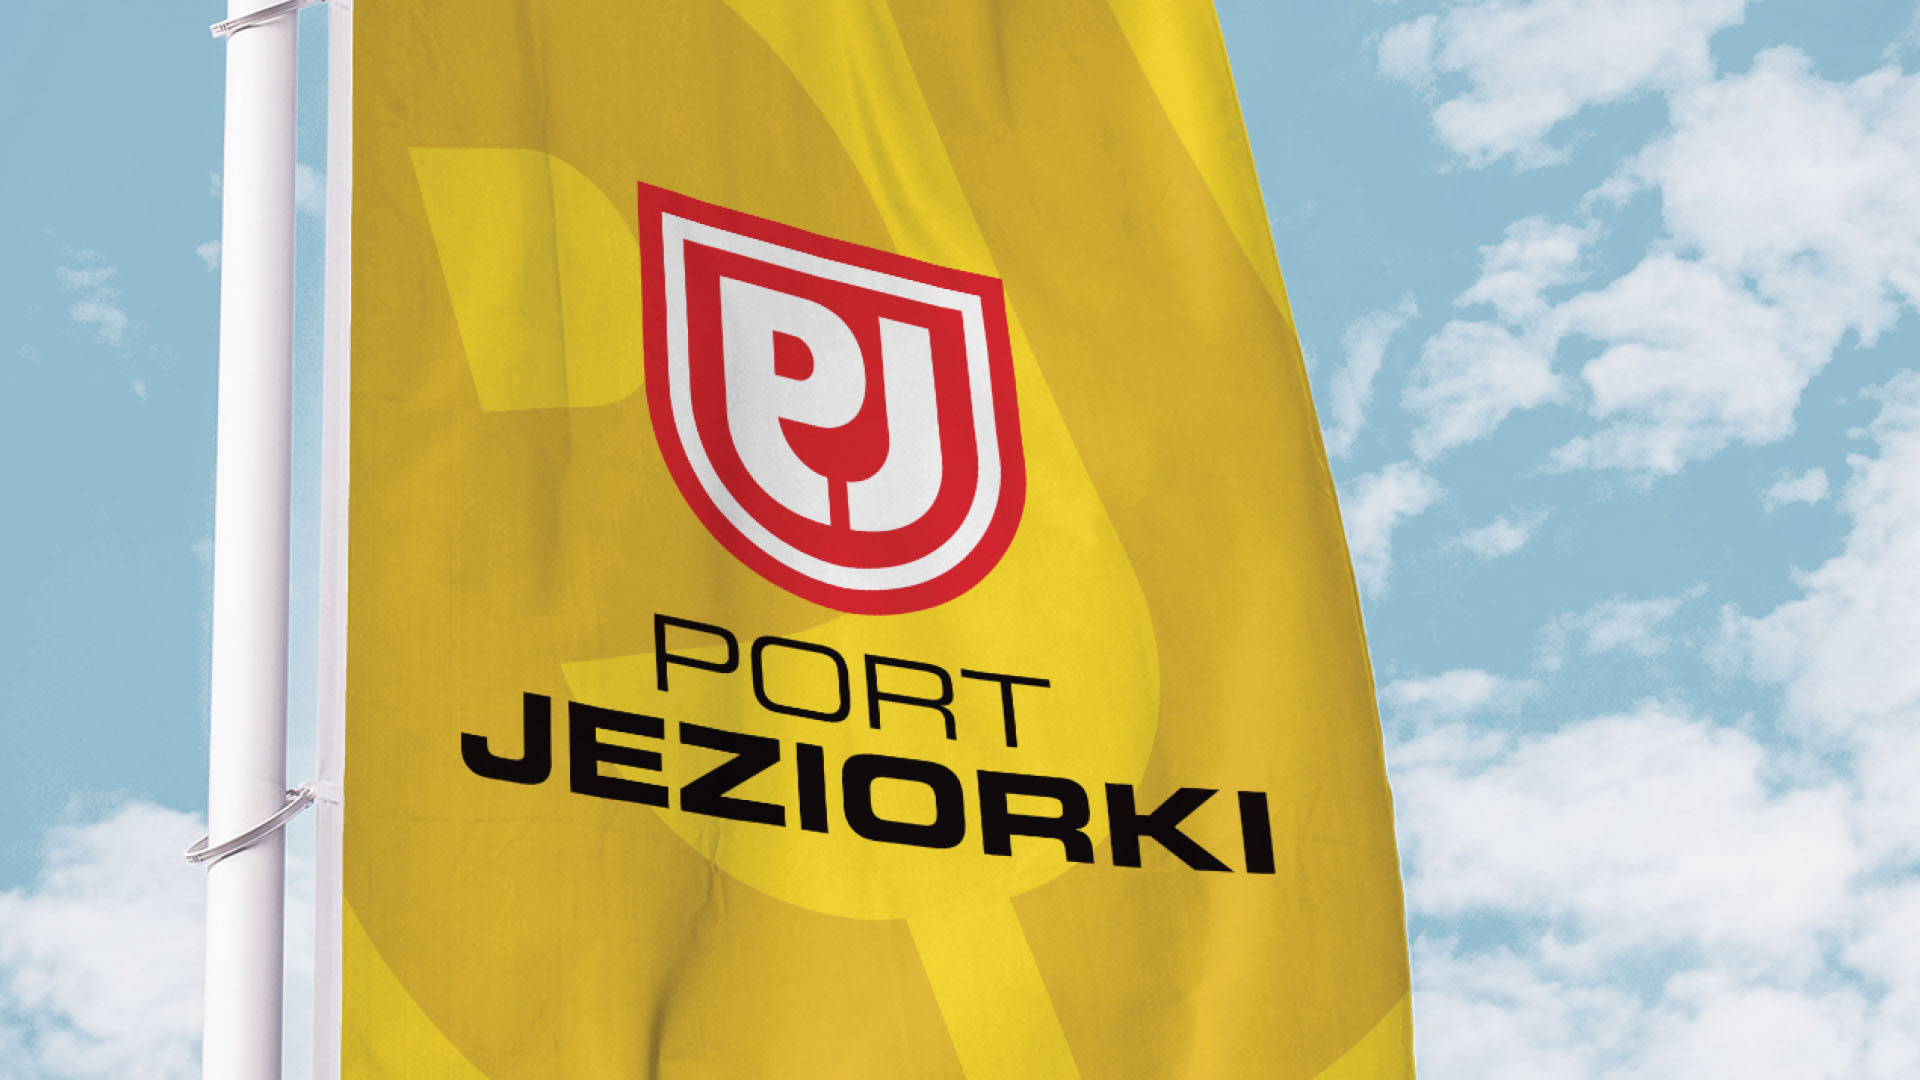 Port Jeziorki